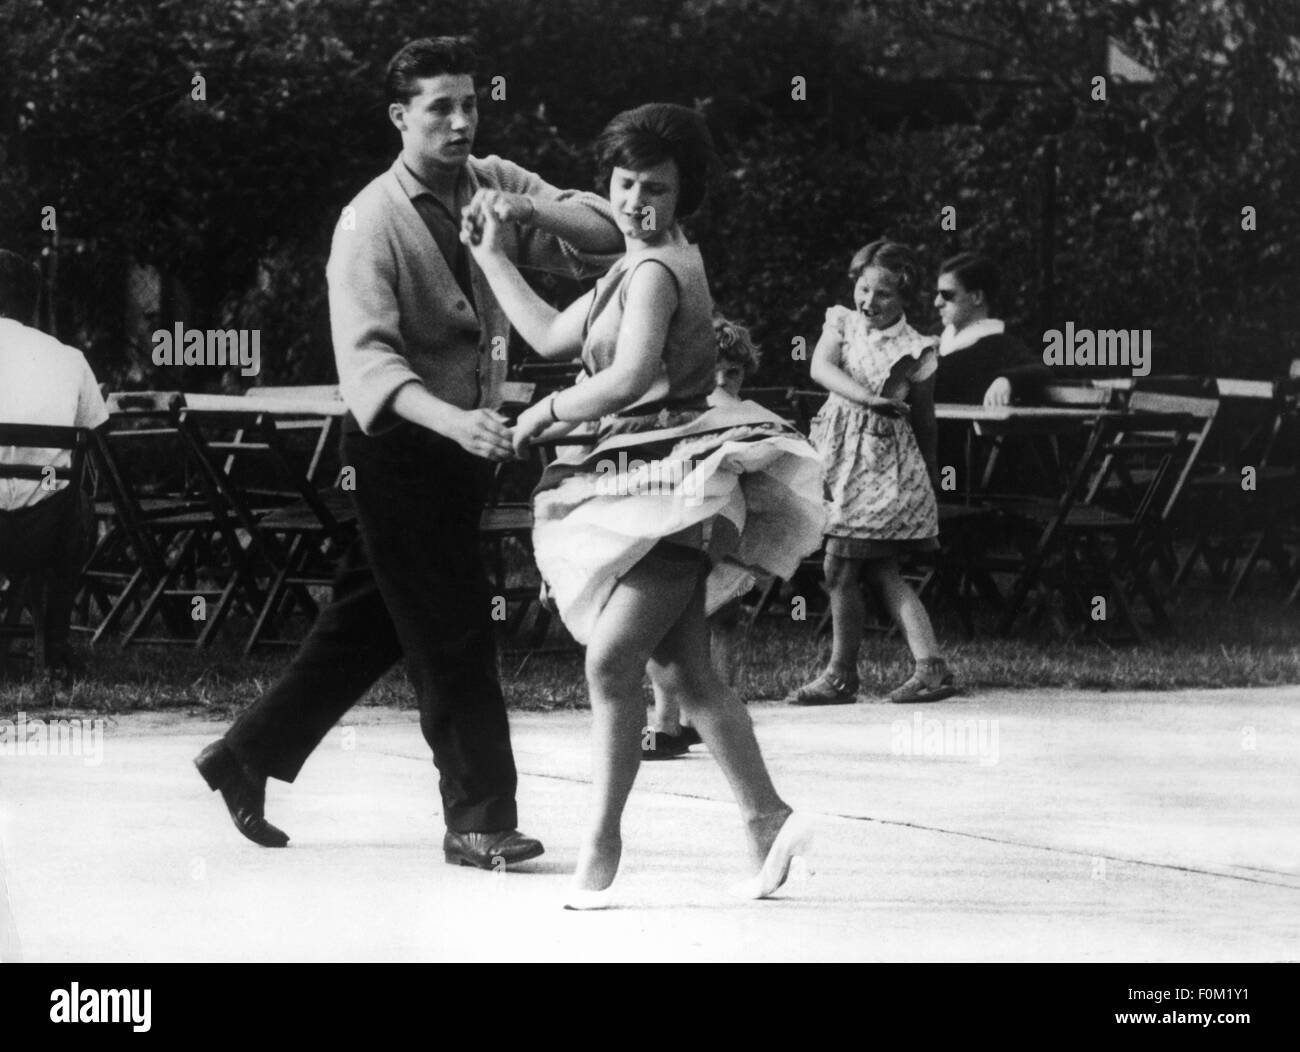 Danse, rock 'n' roll, couple de danse, Allemagne, 1964, droits supplémentaires-Clearences-non disponible Banque D'Images